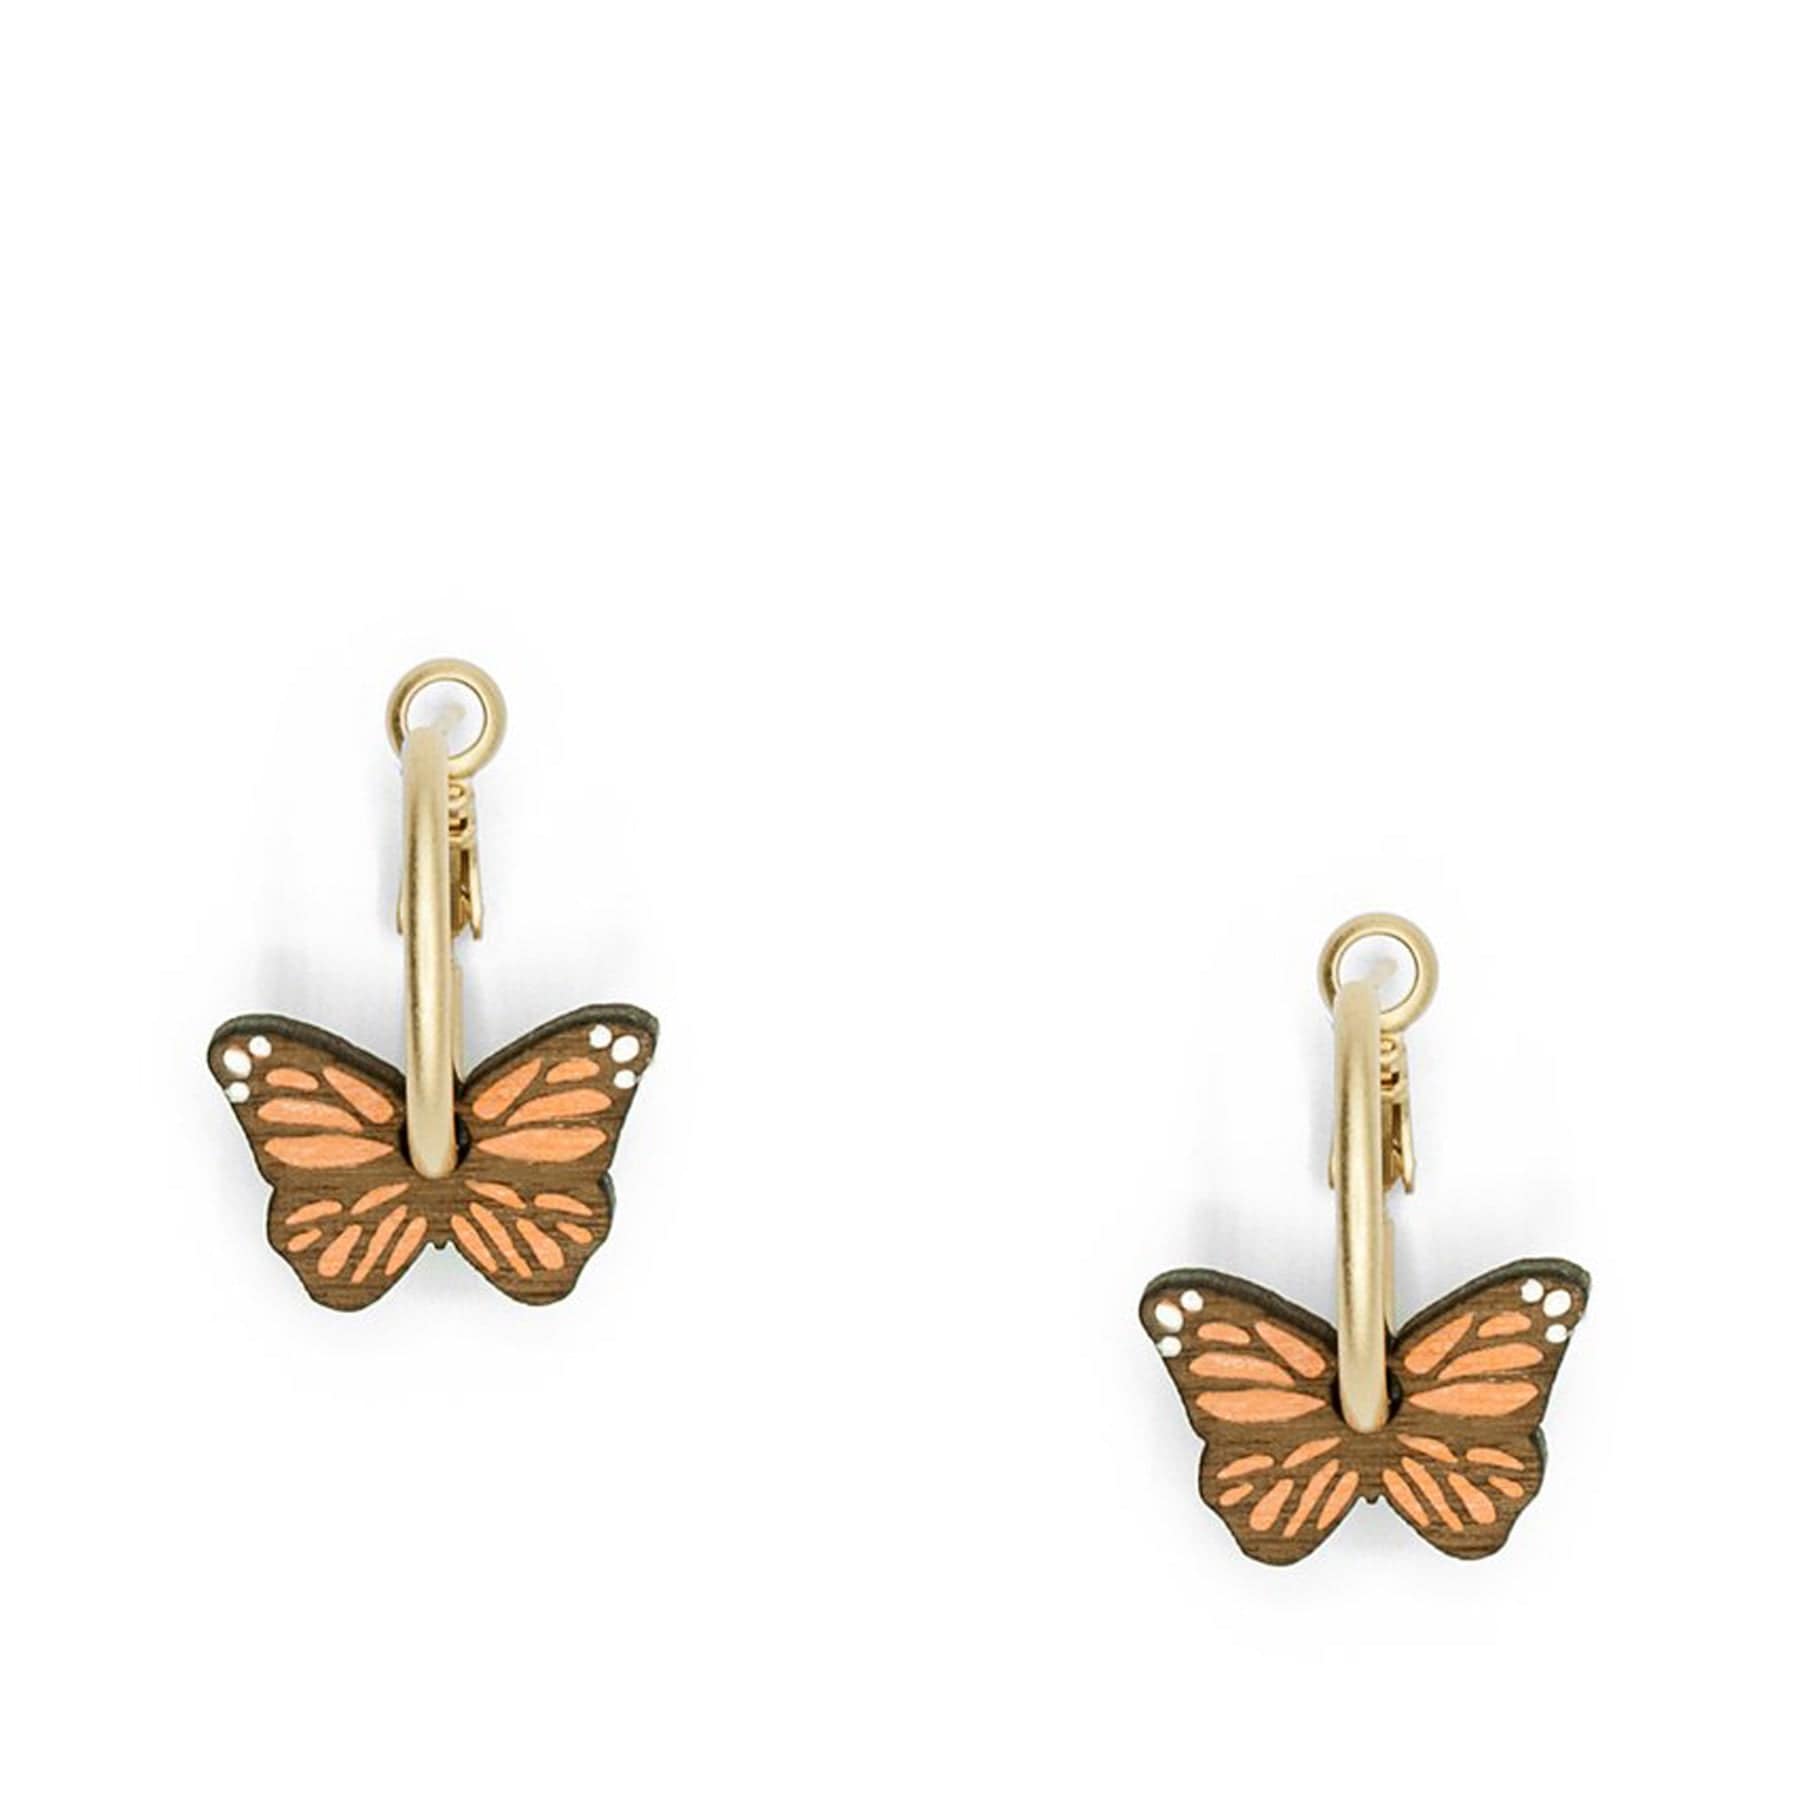 Little butterfly earrings